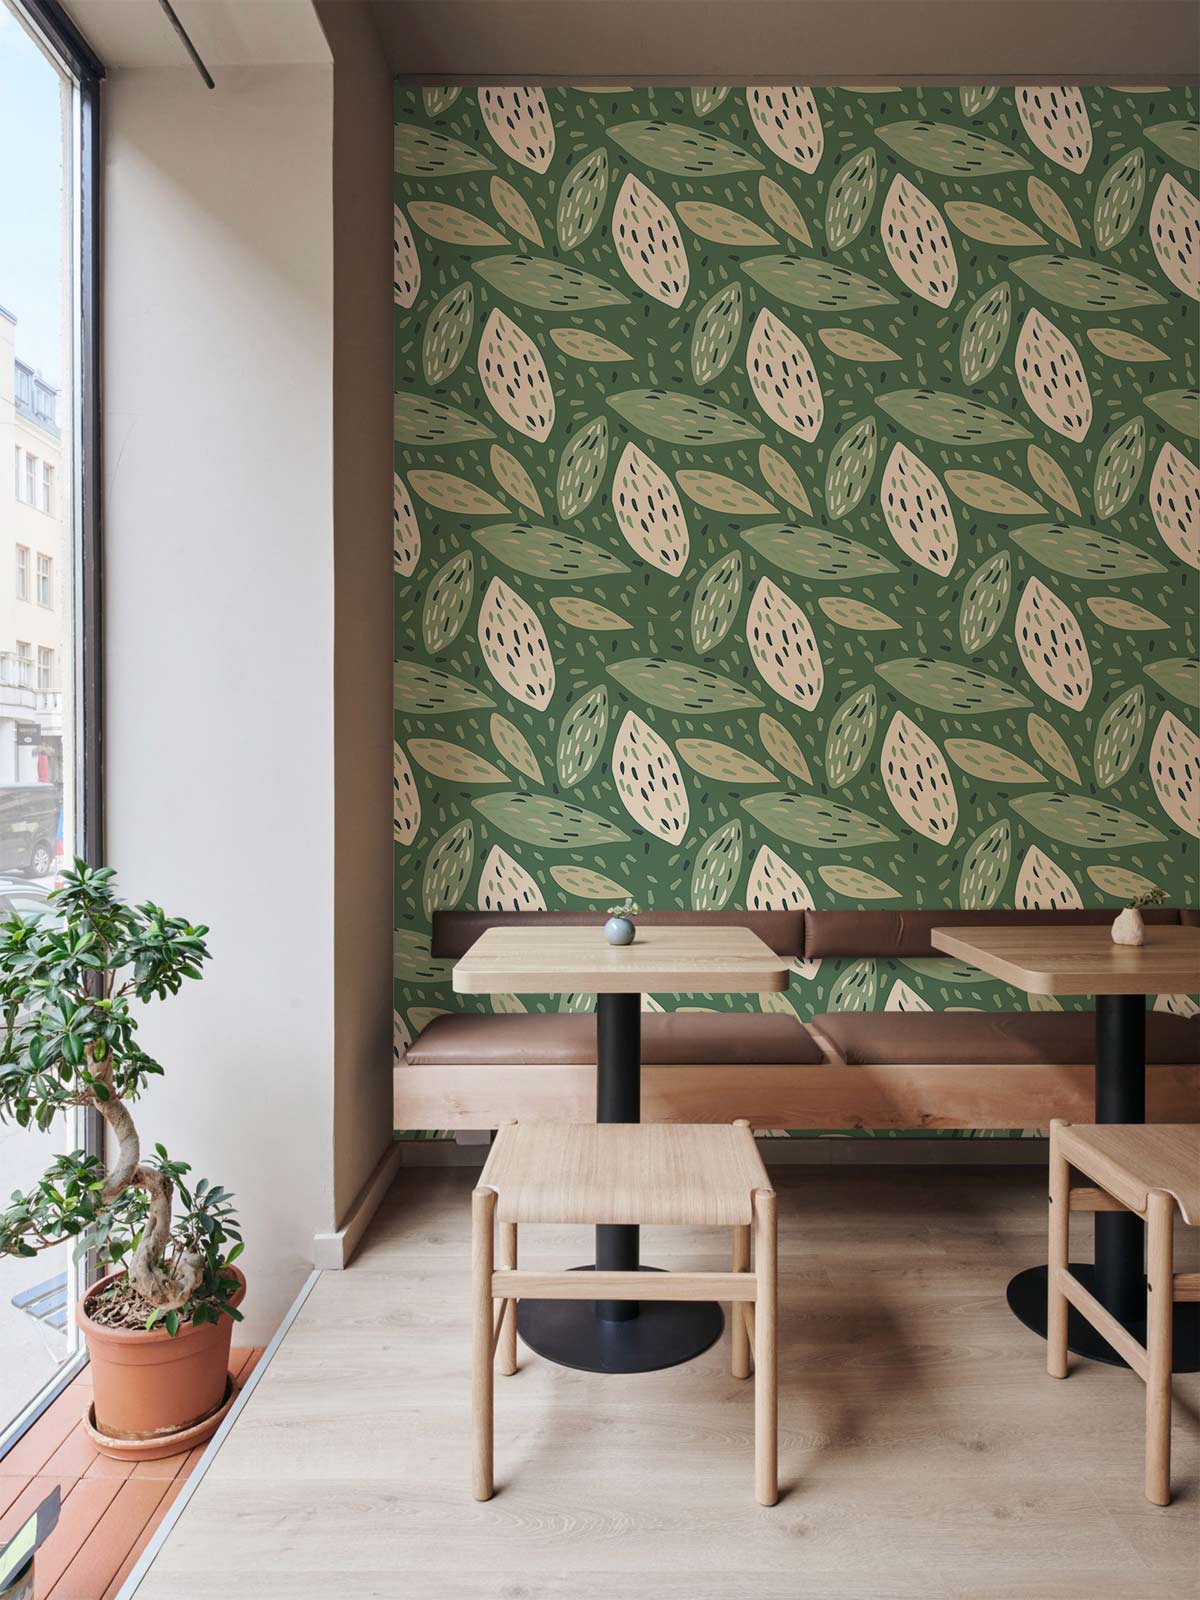 Green & White Tropical Leaves Mural Wallpaper Restaurant